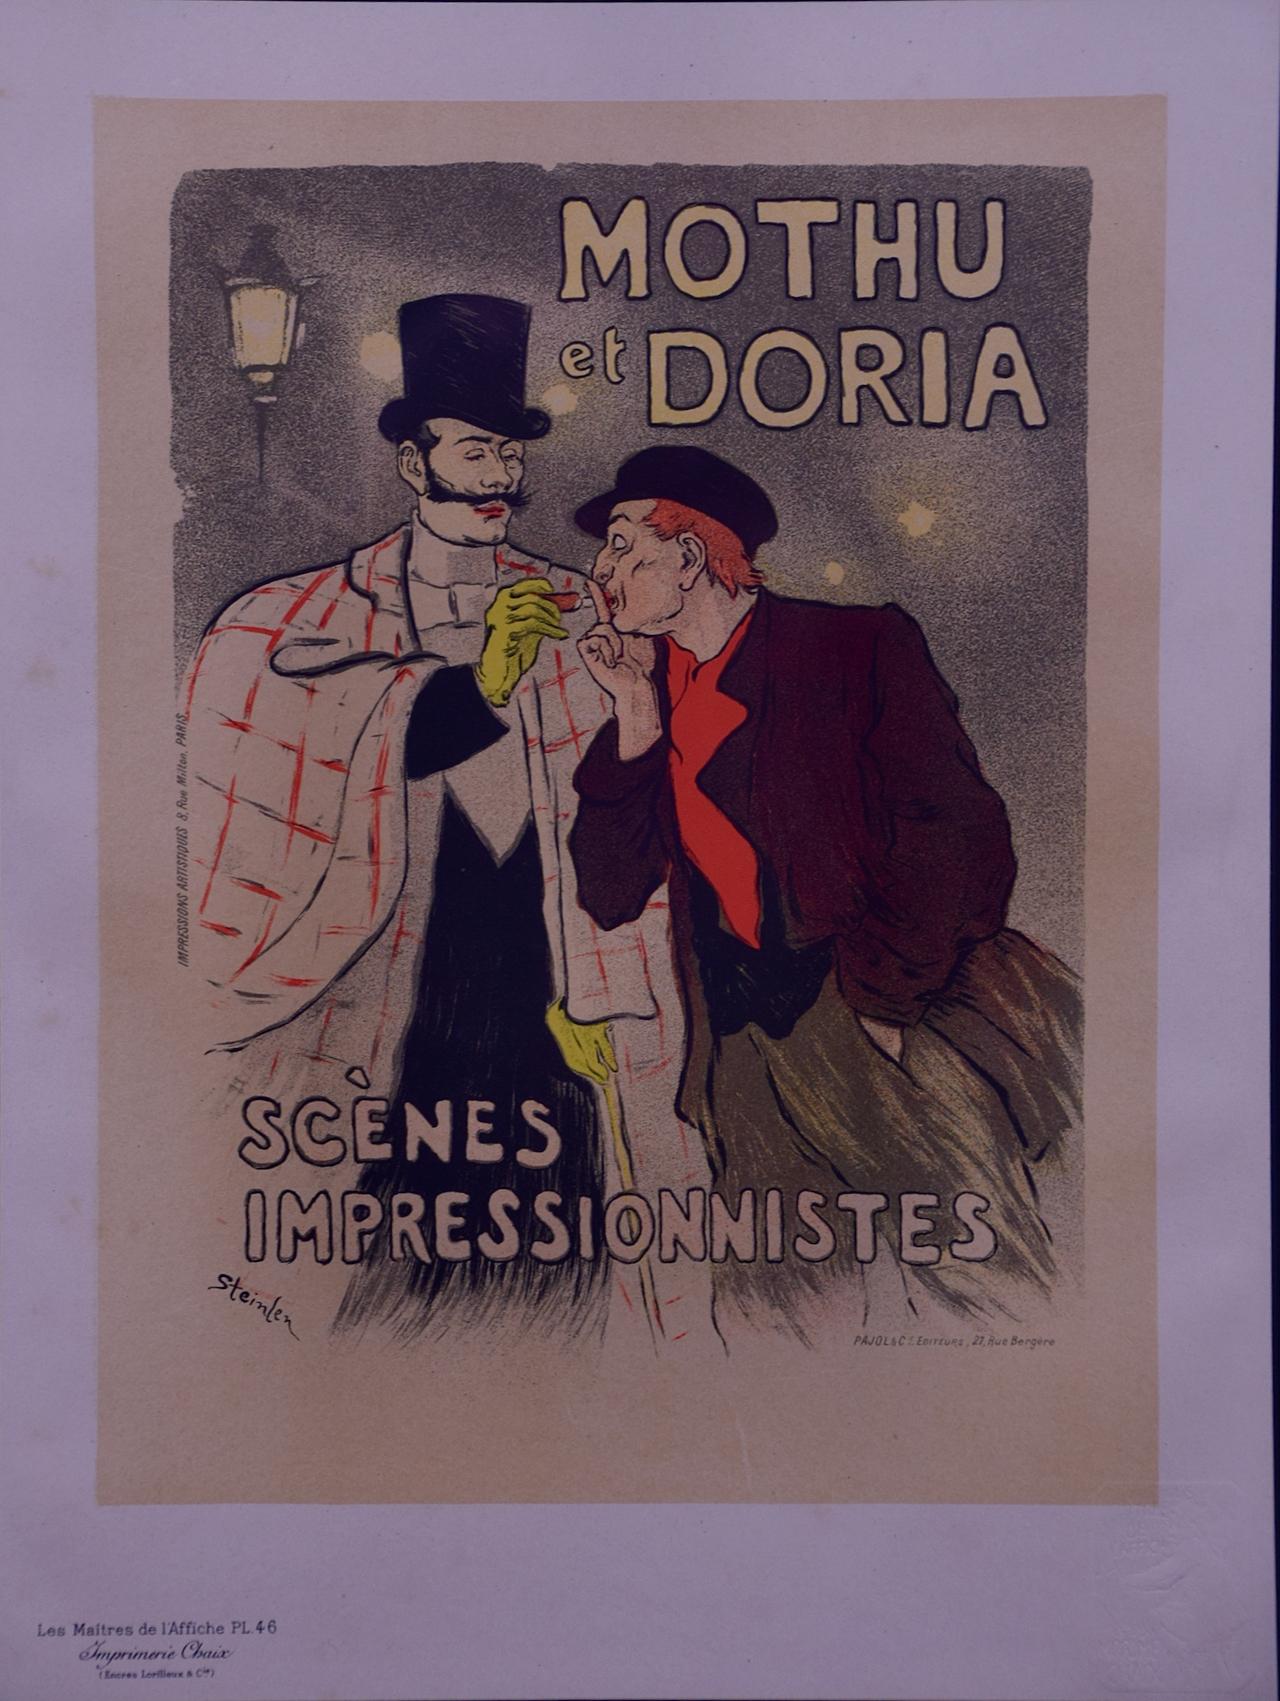 Mothu et Doria: Eine Lithographie aus Les Maitres de l'Affiche von Steinlen aus dem 19. Jahrhundert – Print von Théophile Alexandre Steinlen